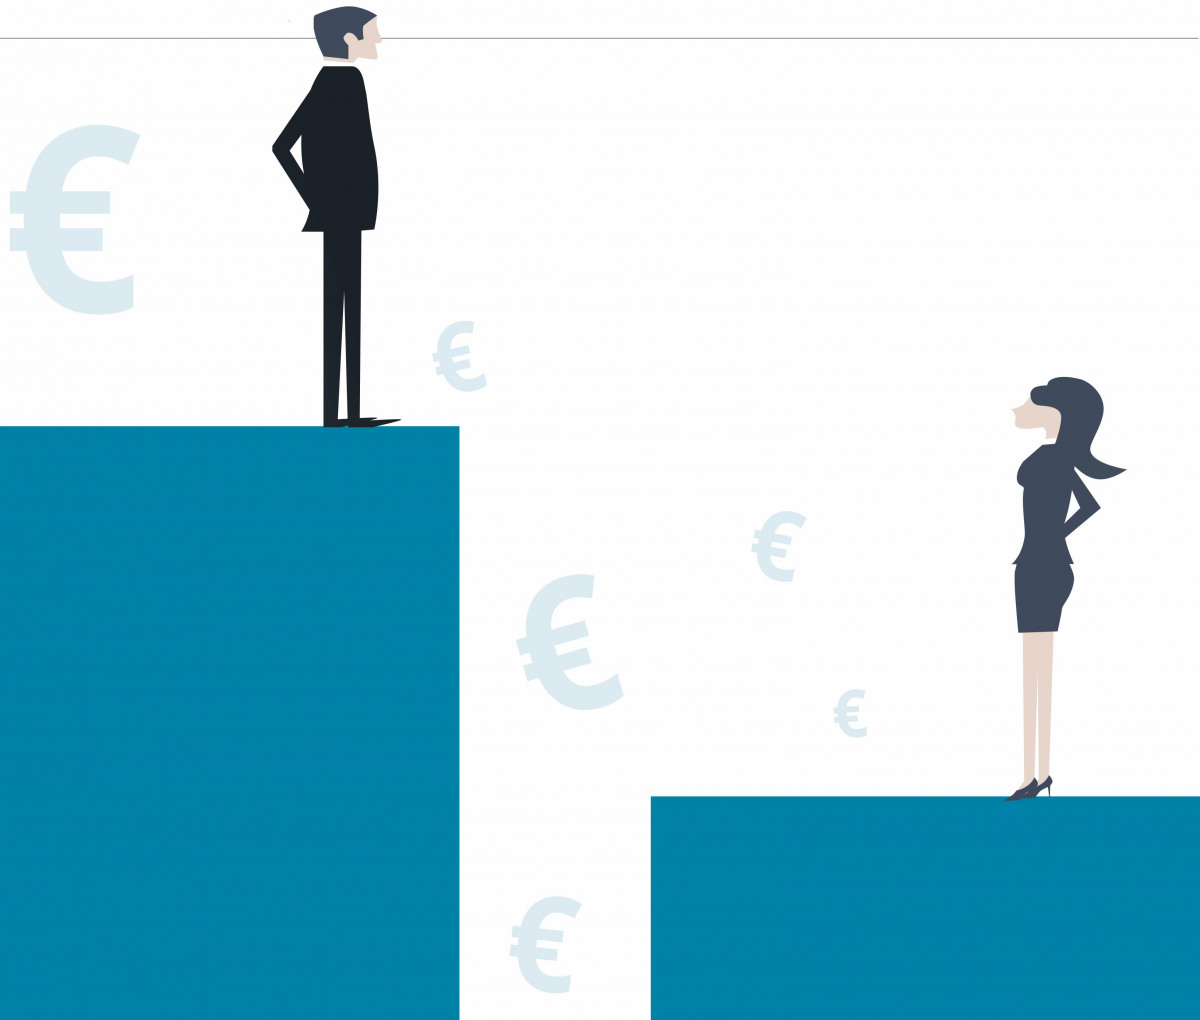 Frauen verdienen in Deutschland durchschnittlich weiterhin 18 Prozent weniger als Männer